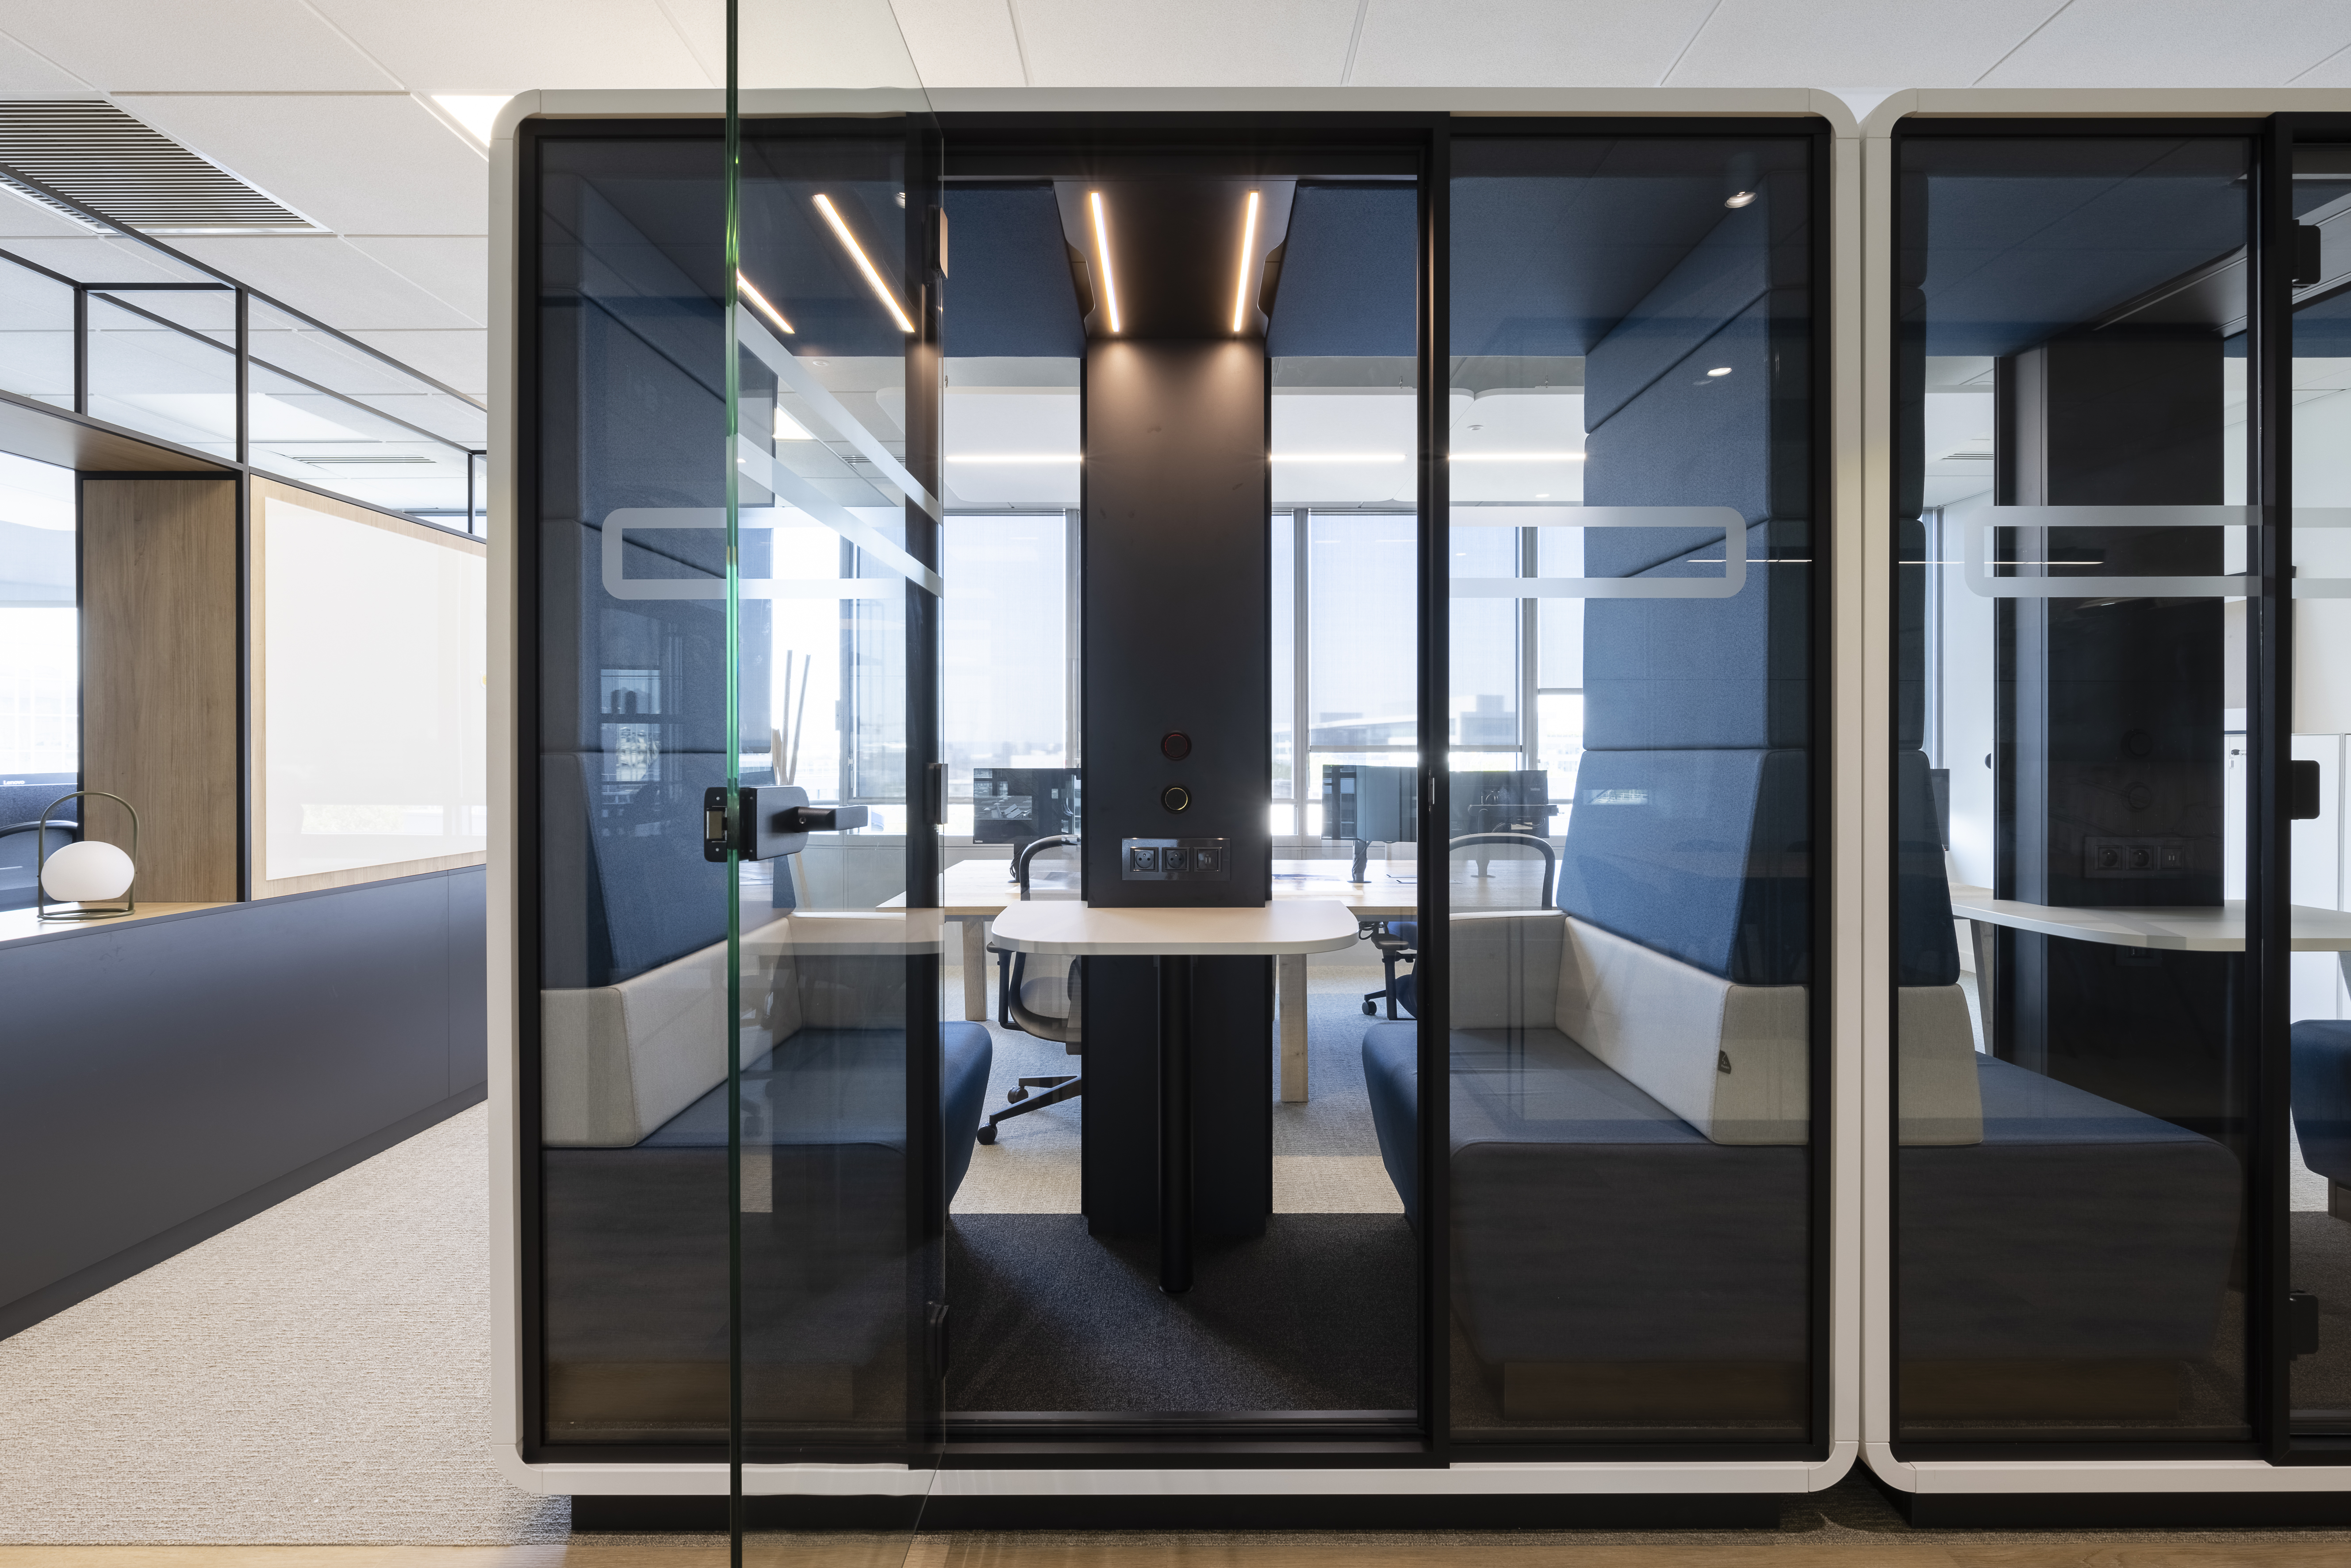 Ces cabines de la marque Hush, incarnent la modernité et l'évolution souhaitée par le groupe Delachaux : mettre à disposition des espaces collaboratifs agréables tout en préservant le besoin d'intimité ponctuelle de ses collaborateurs.